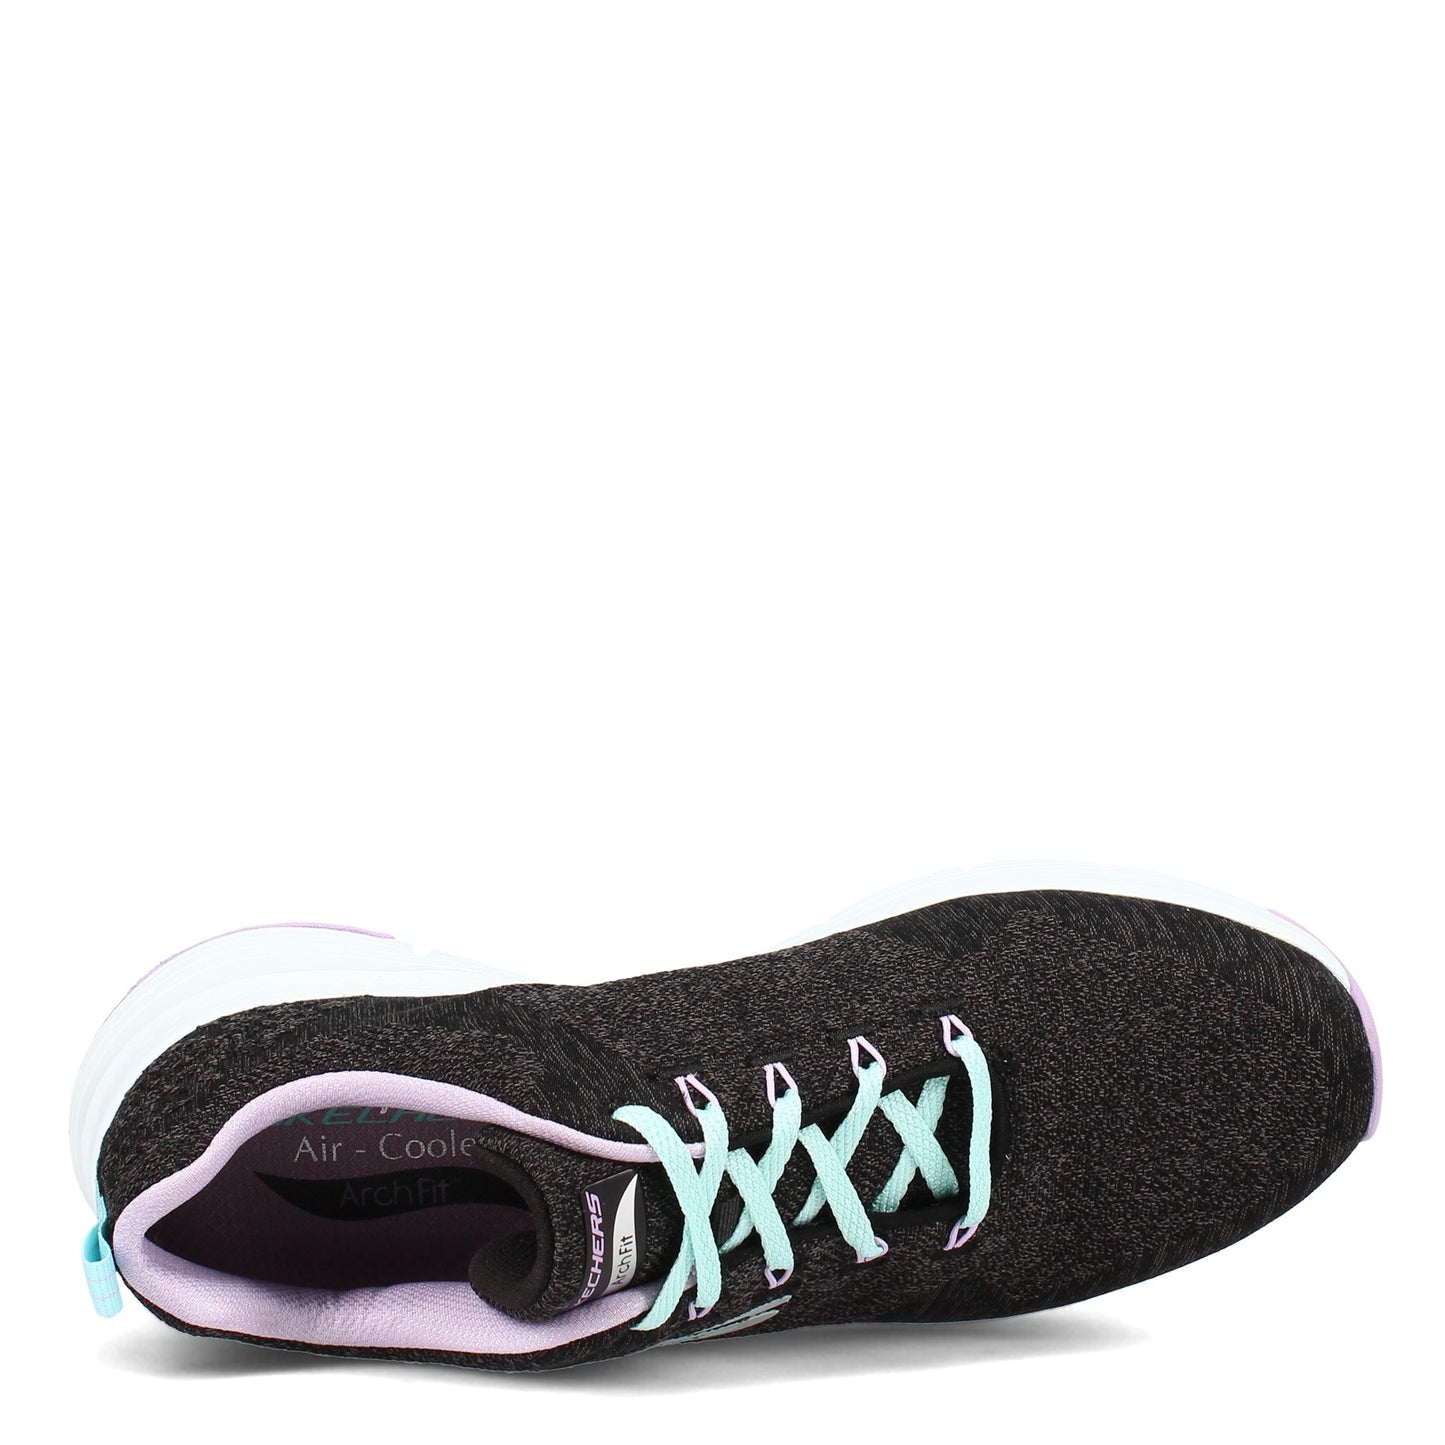 Peltz Shoes  Women's Skechers Arch Fit - Comfy Wave Sneaker BLACK LAVENDAR 149414-BKLV